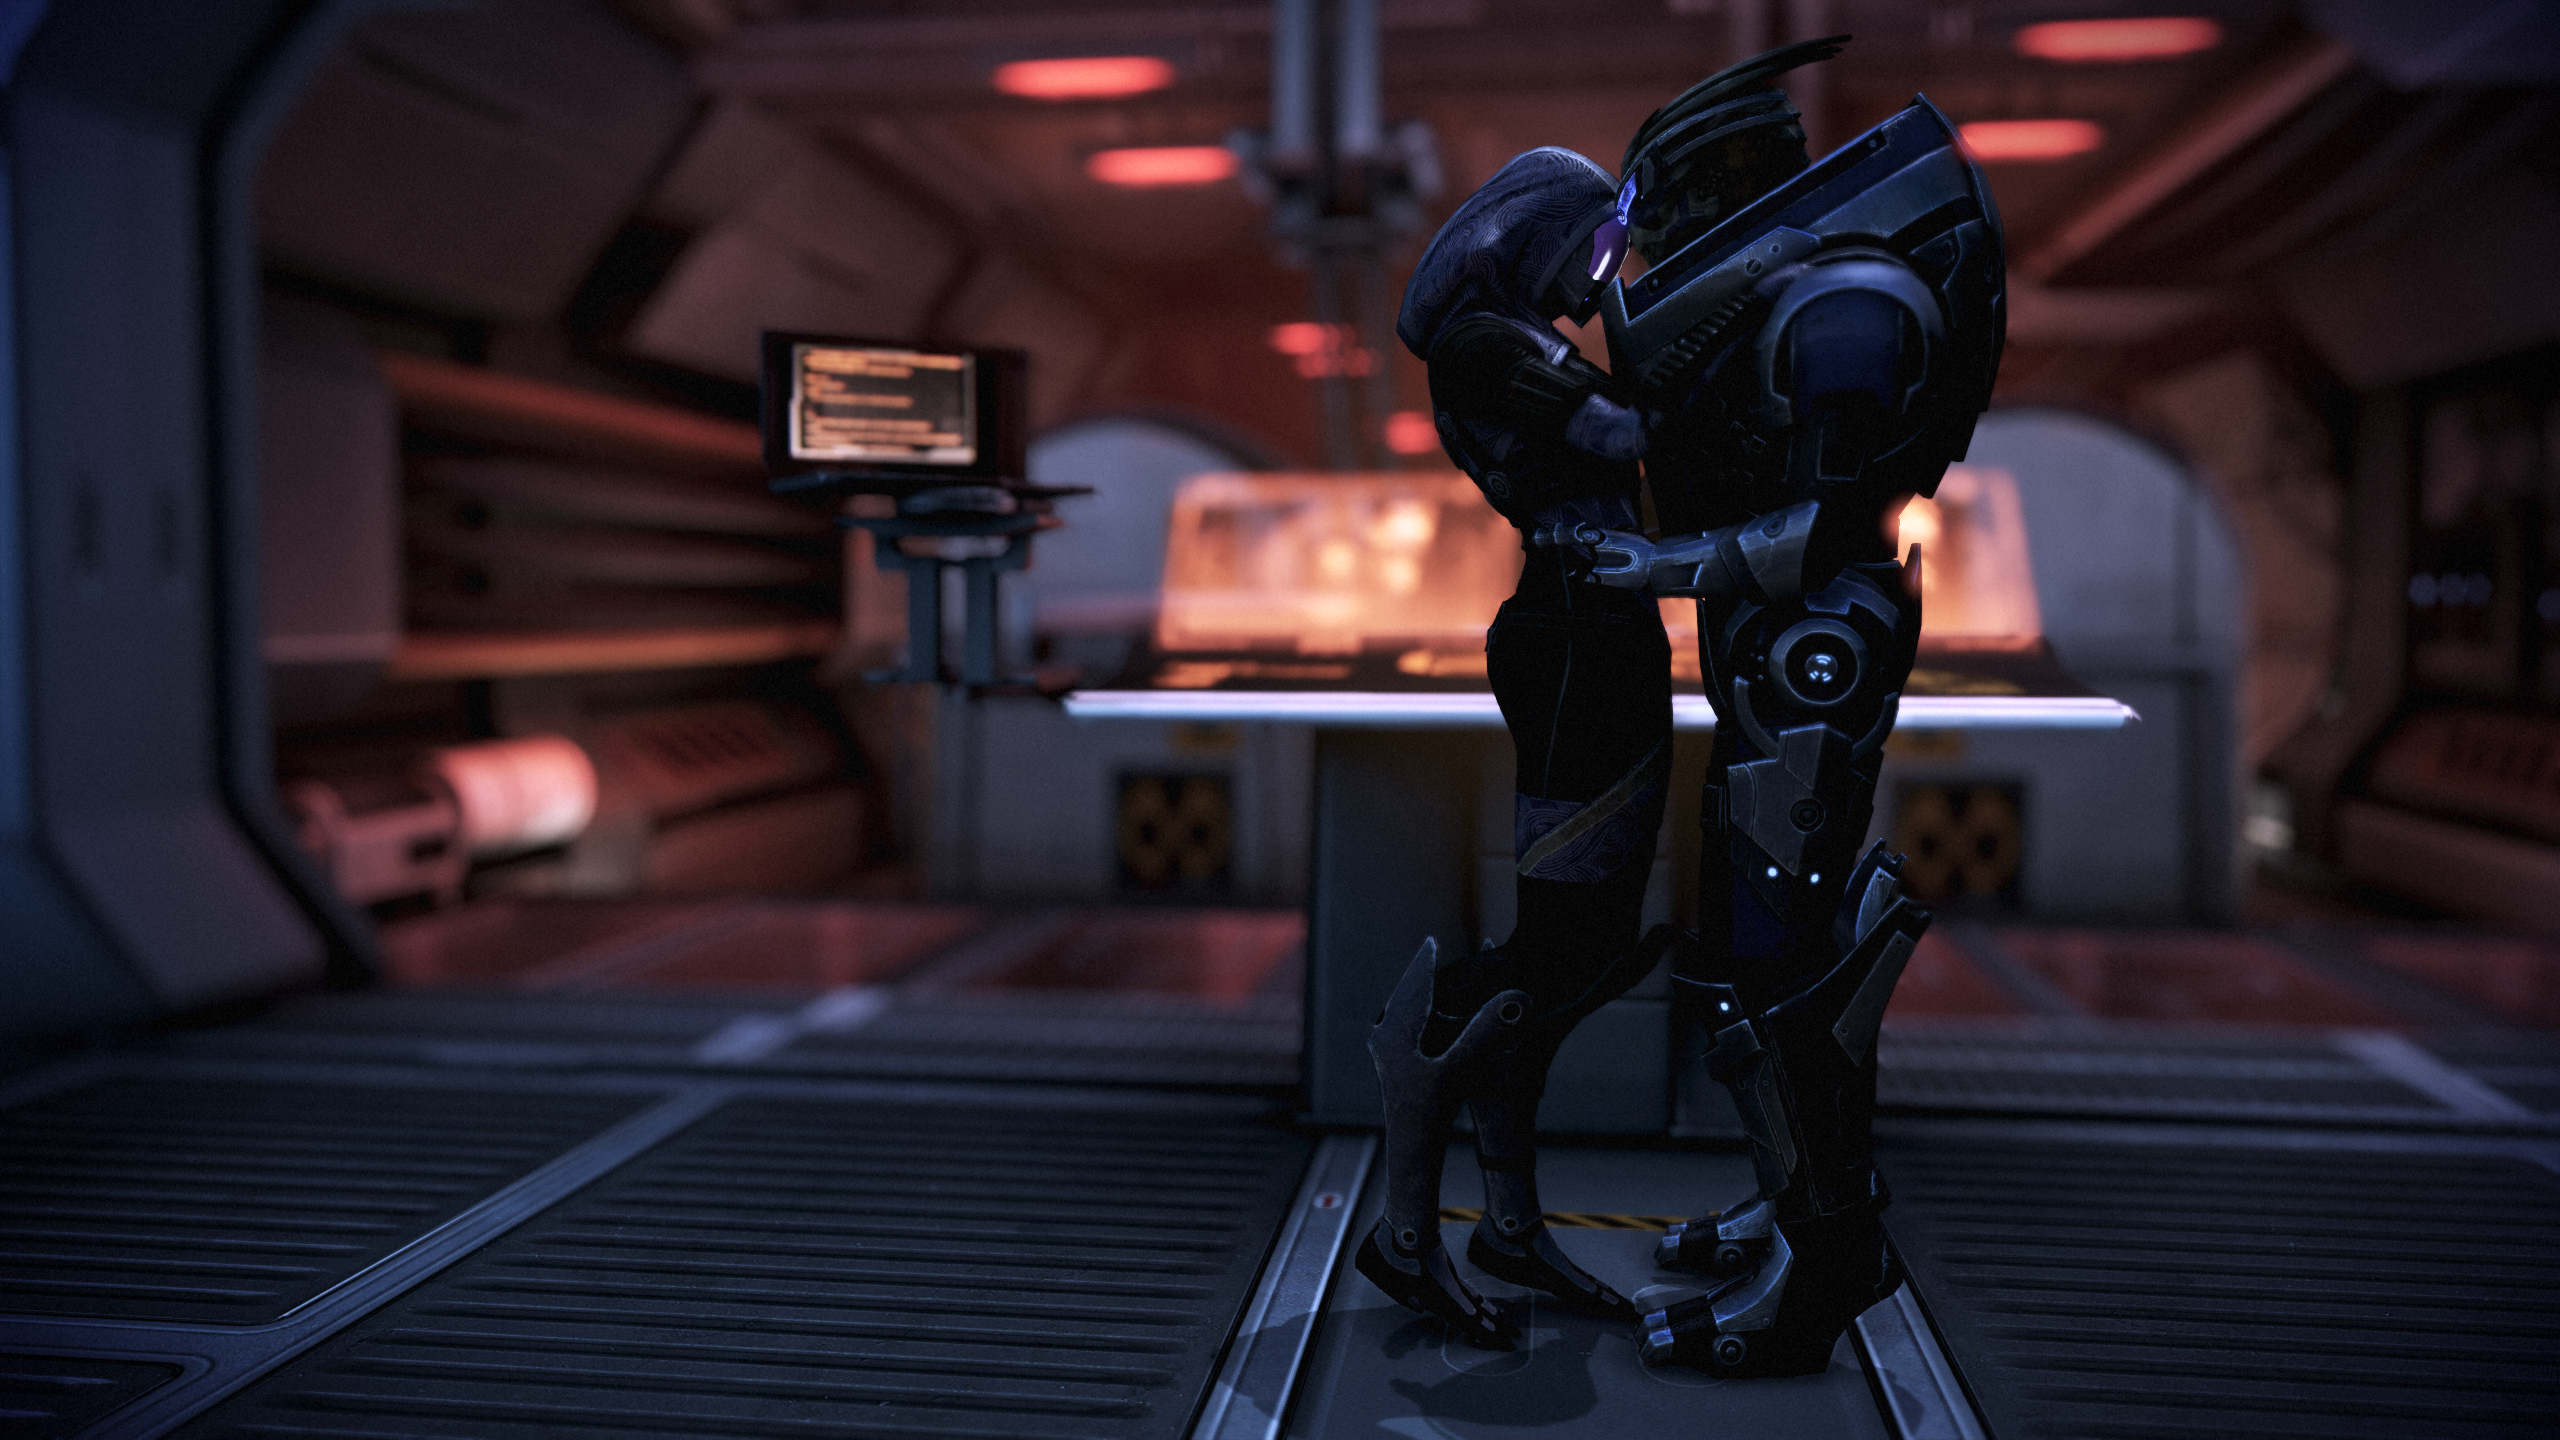 Mass Effect Mass Effect 3 Video Games TaliZorah Garrus Vakarian 2560x1440